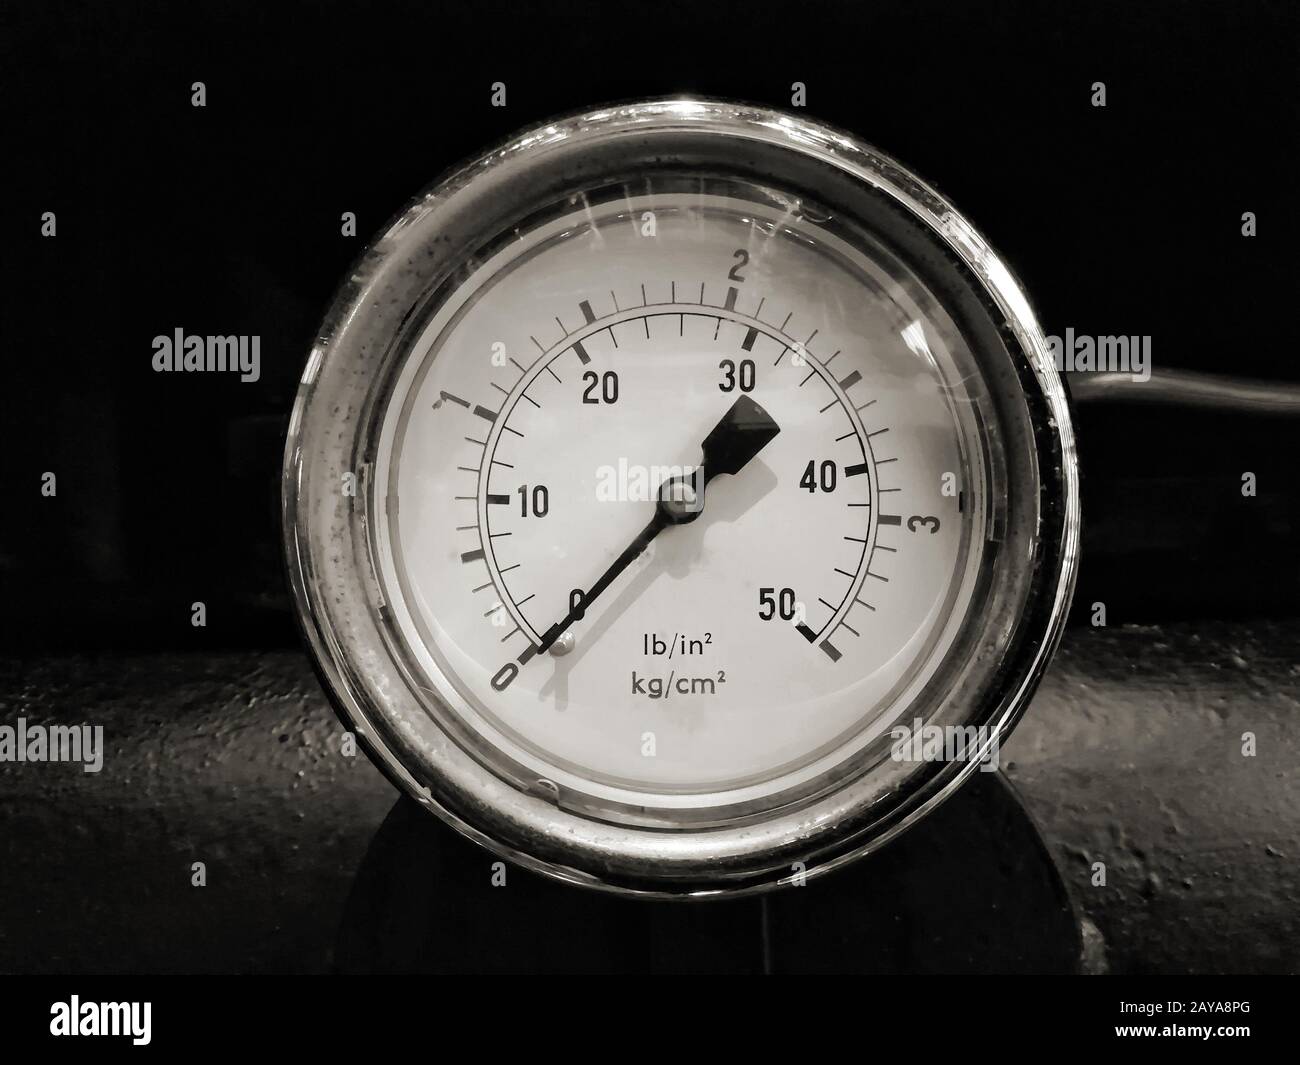 image monochrome d'une jauge ronde brillante de pressuremillésime avec des nombres marqués en psi et métrique sur le cadran du compteur sur ma industriel Banque D'Images